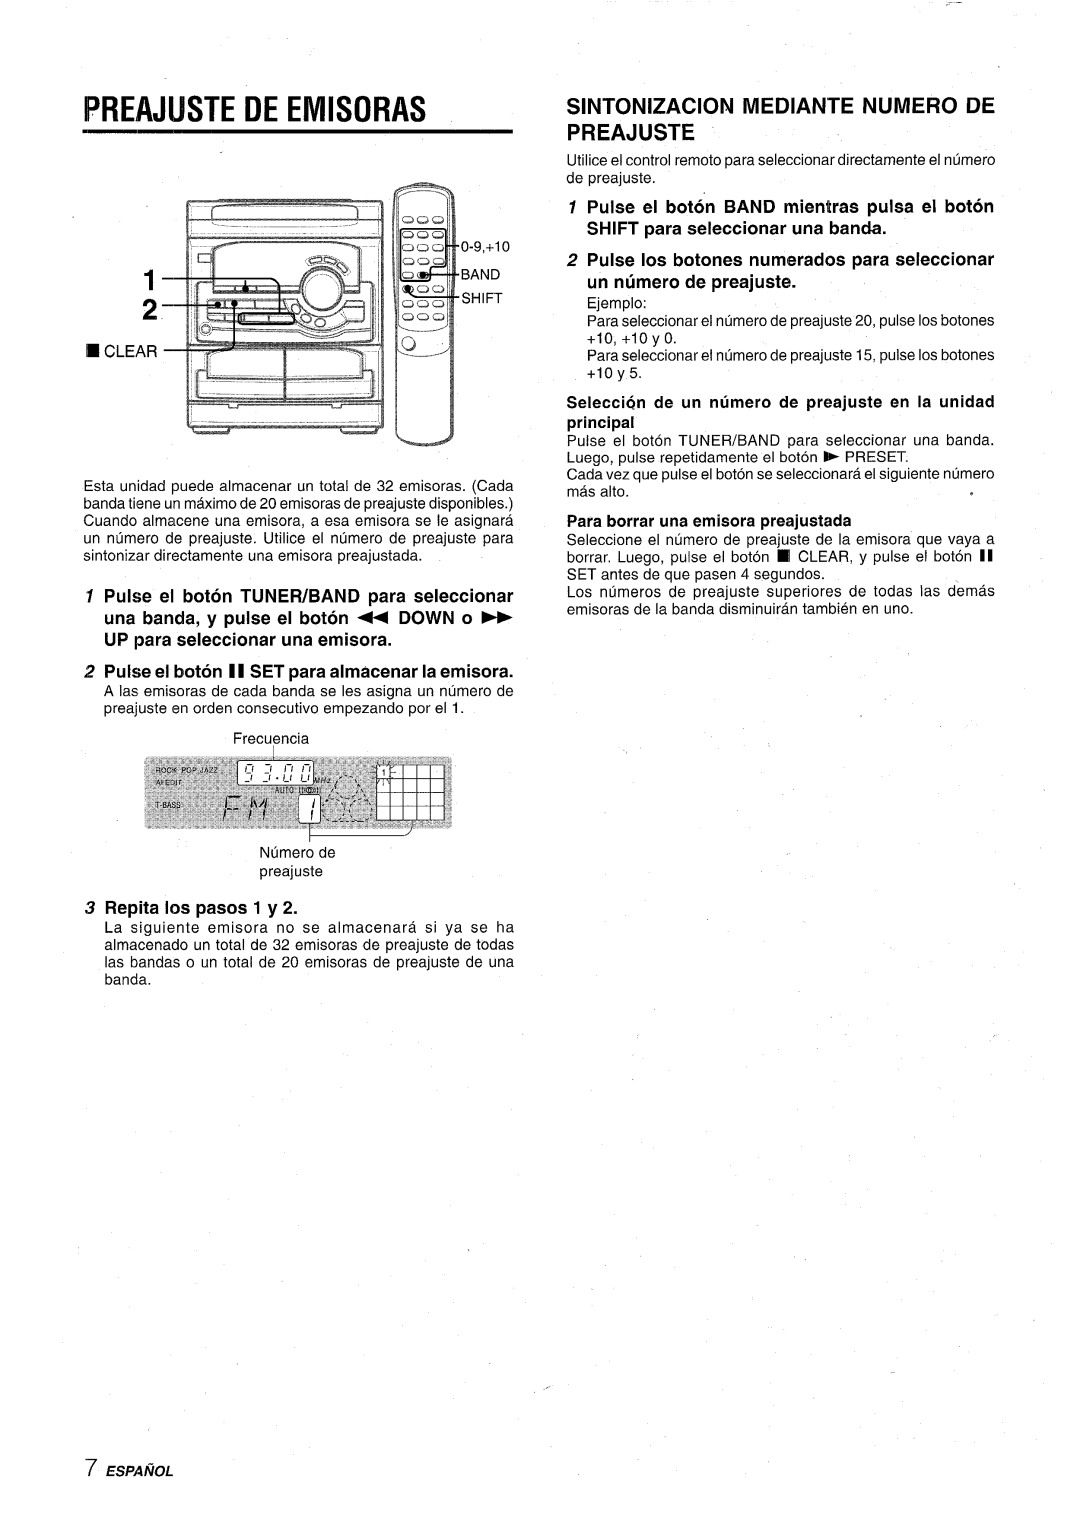 Aiwa CX-NA22 manual Preajijste De Emisoras, Sintonizacion Mediante Numero De Preajuste, Repita h pasos 1 y 